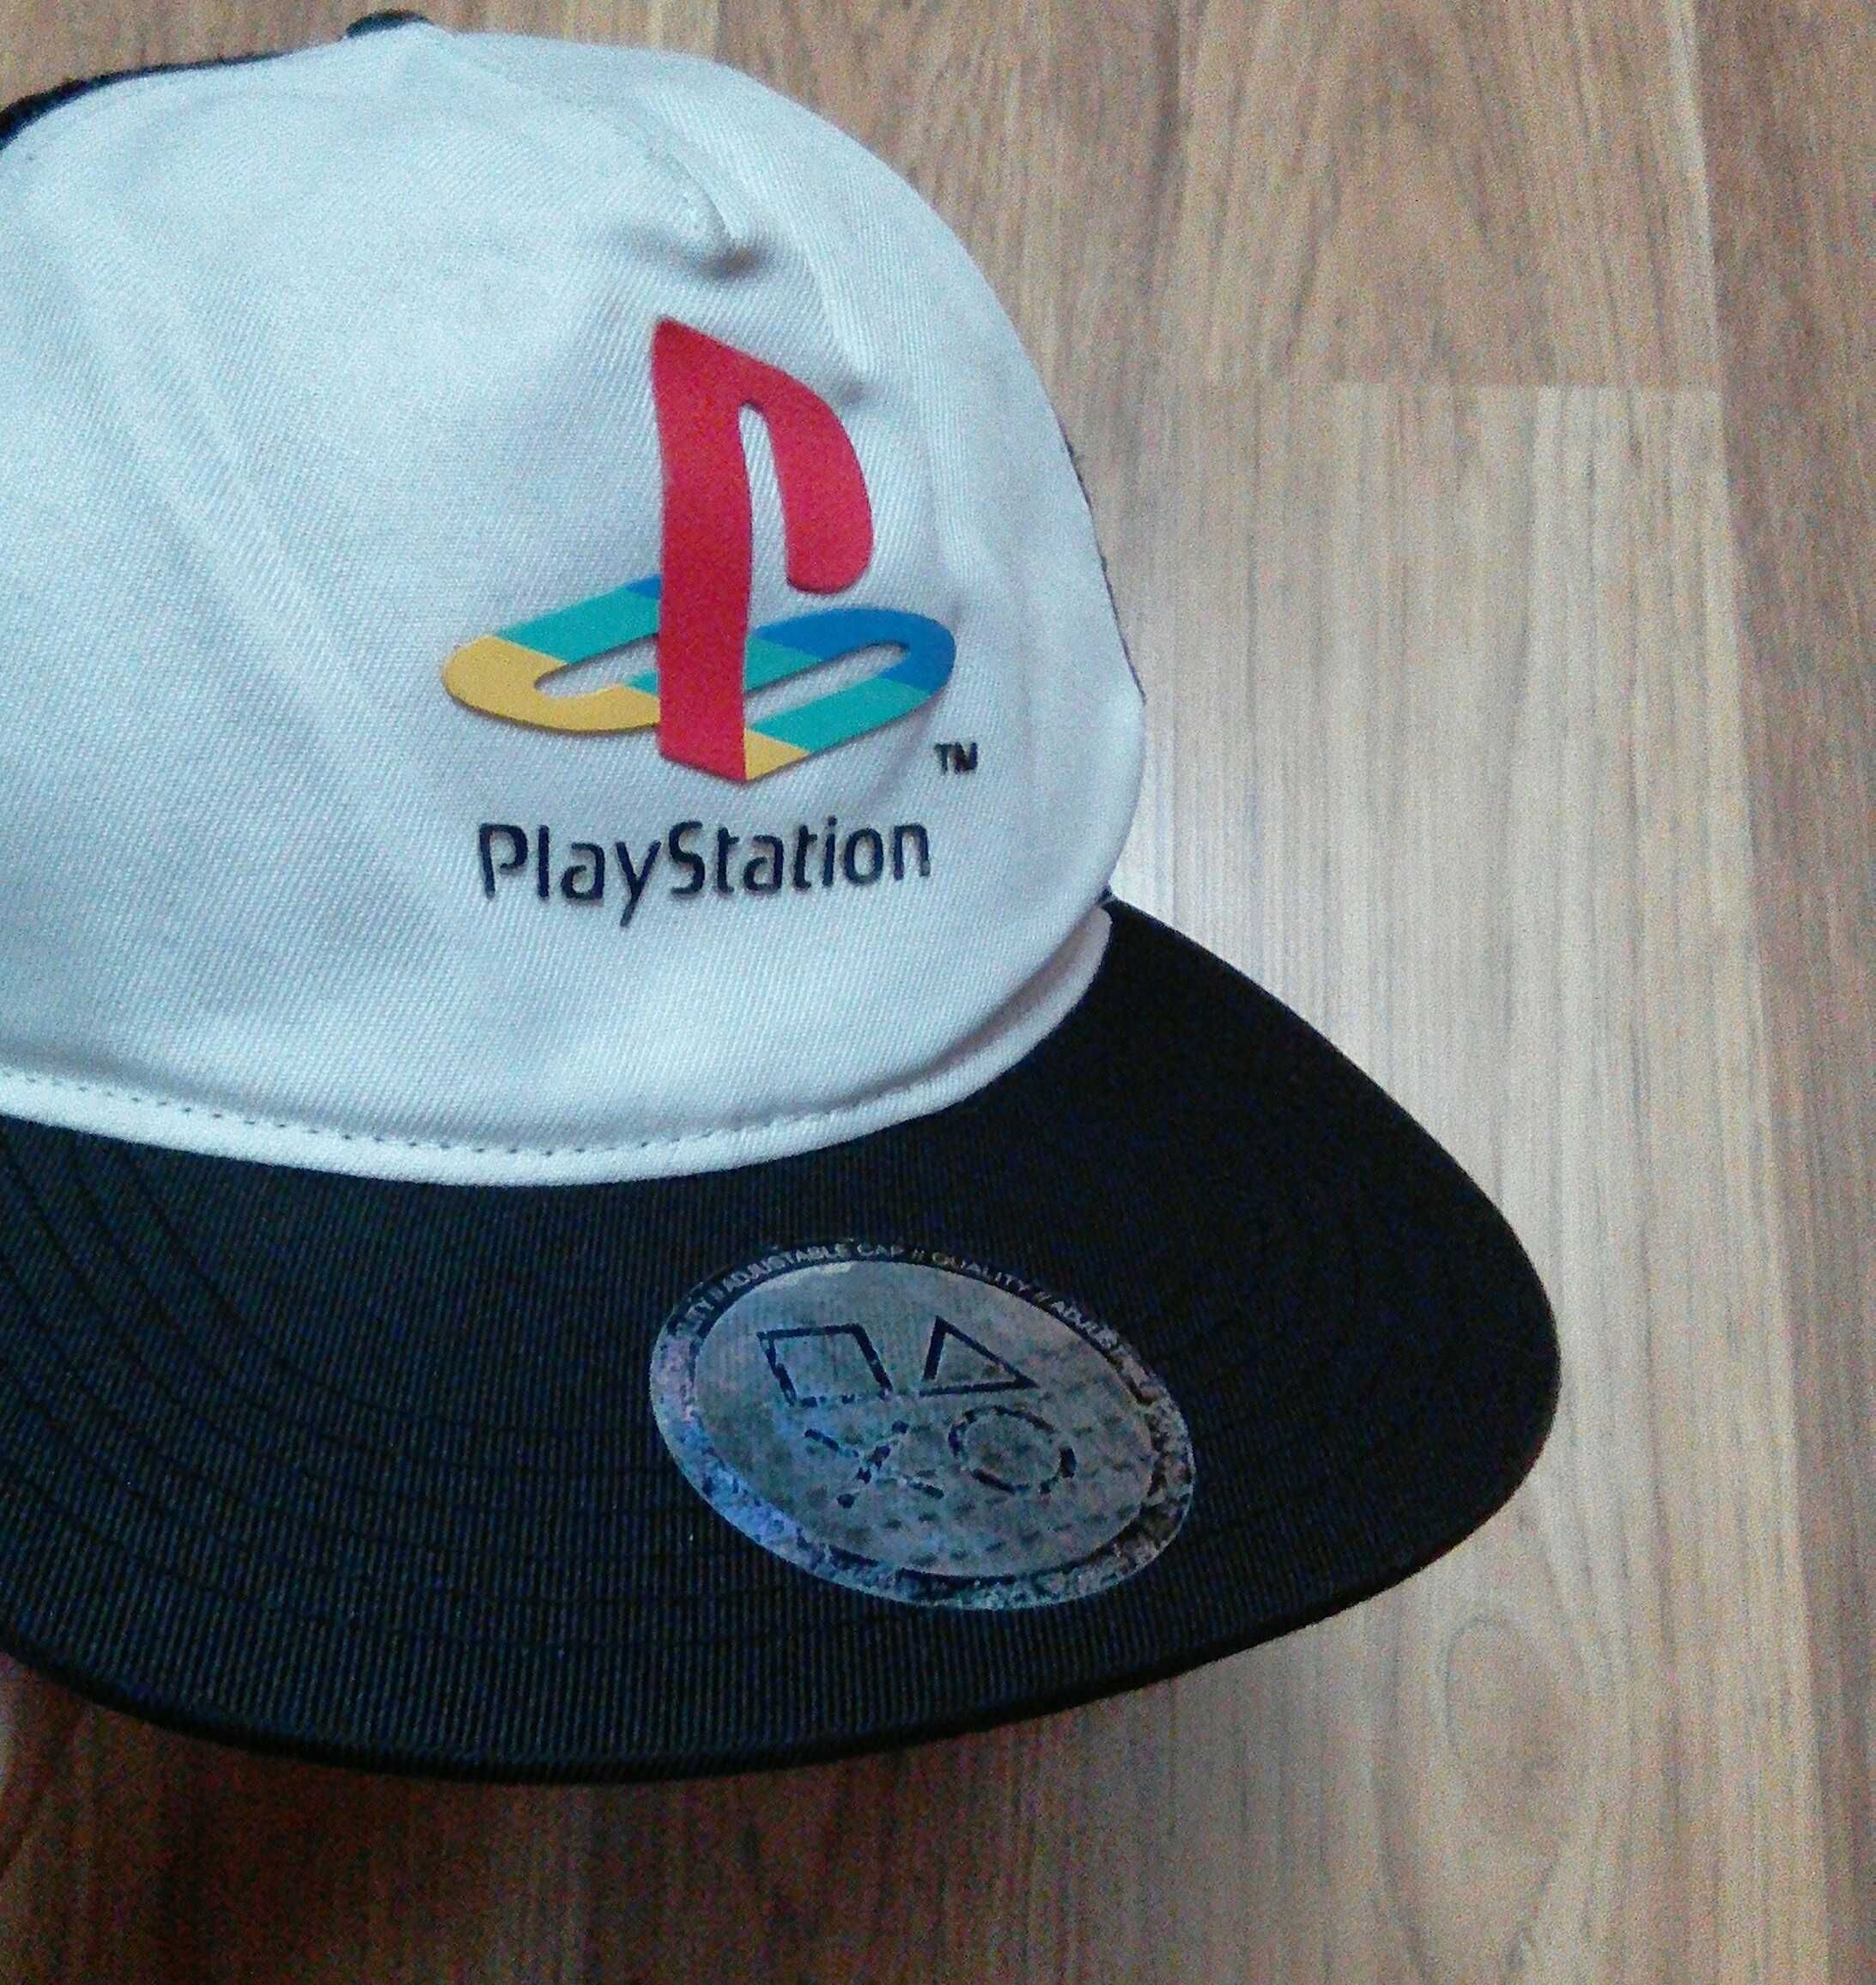 Шапка Кепка PlayStation Symbols Unisex коллекційна